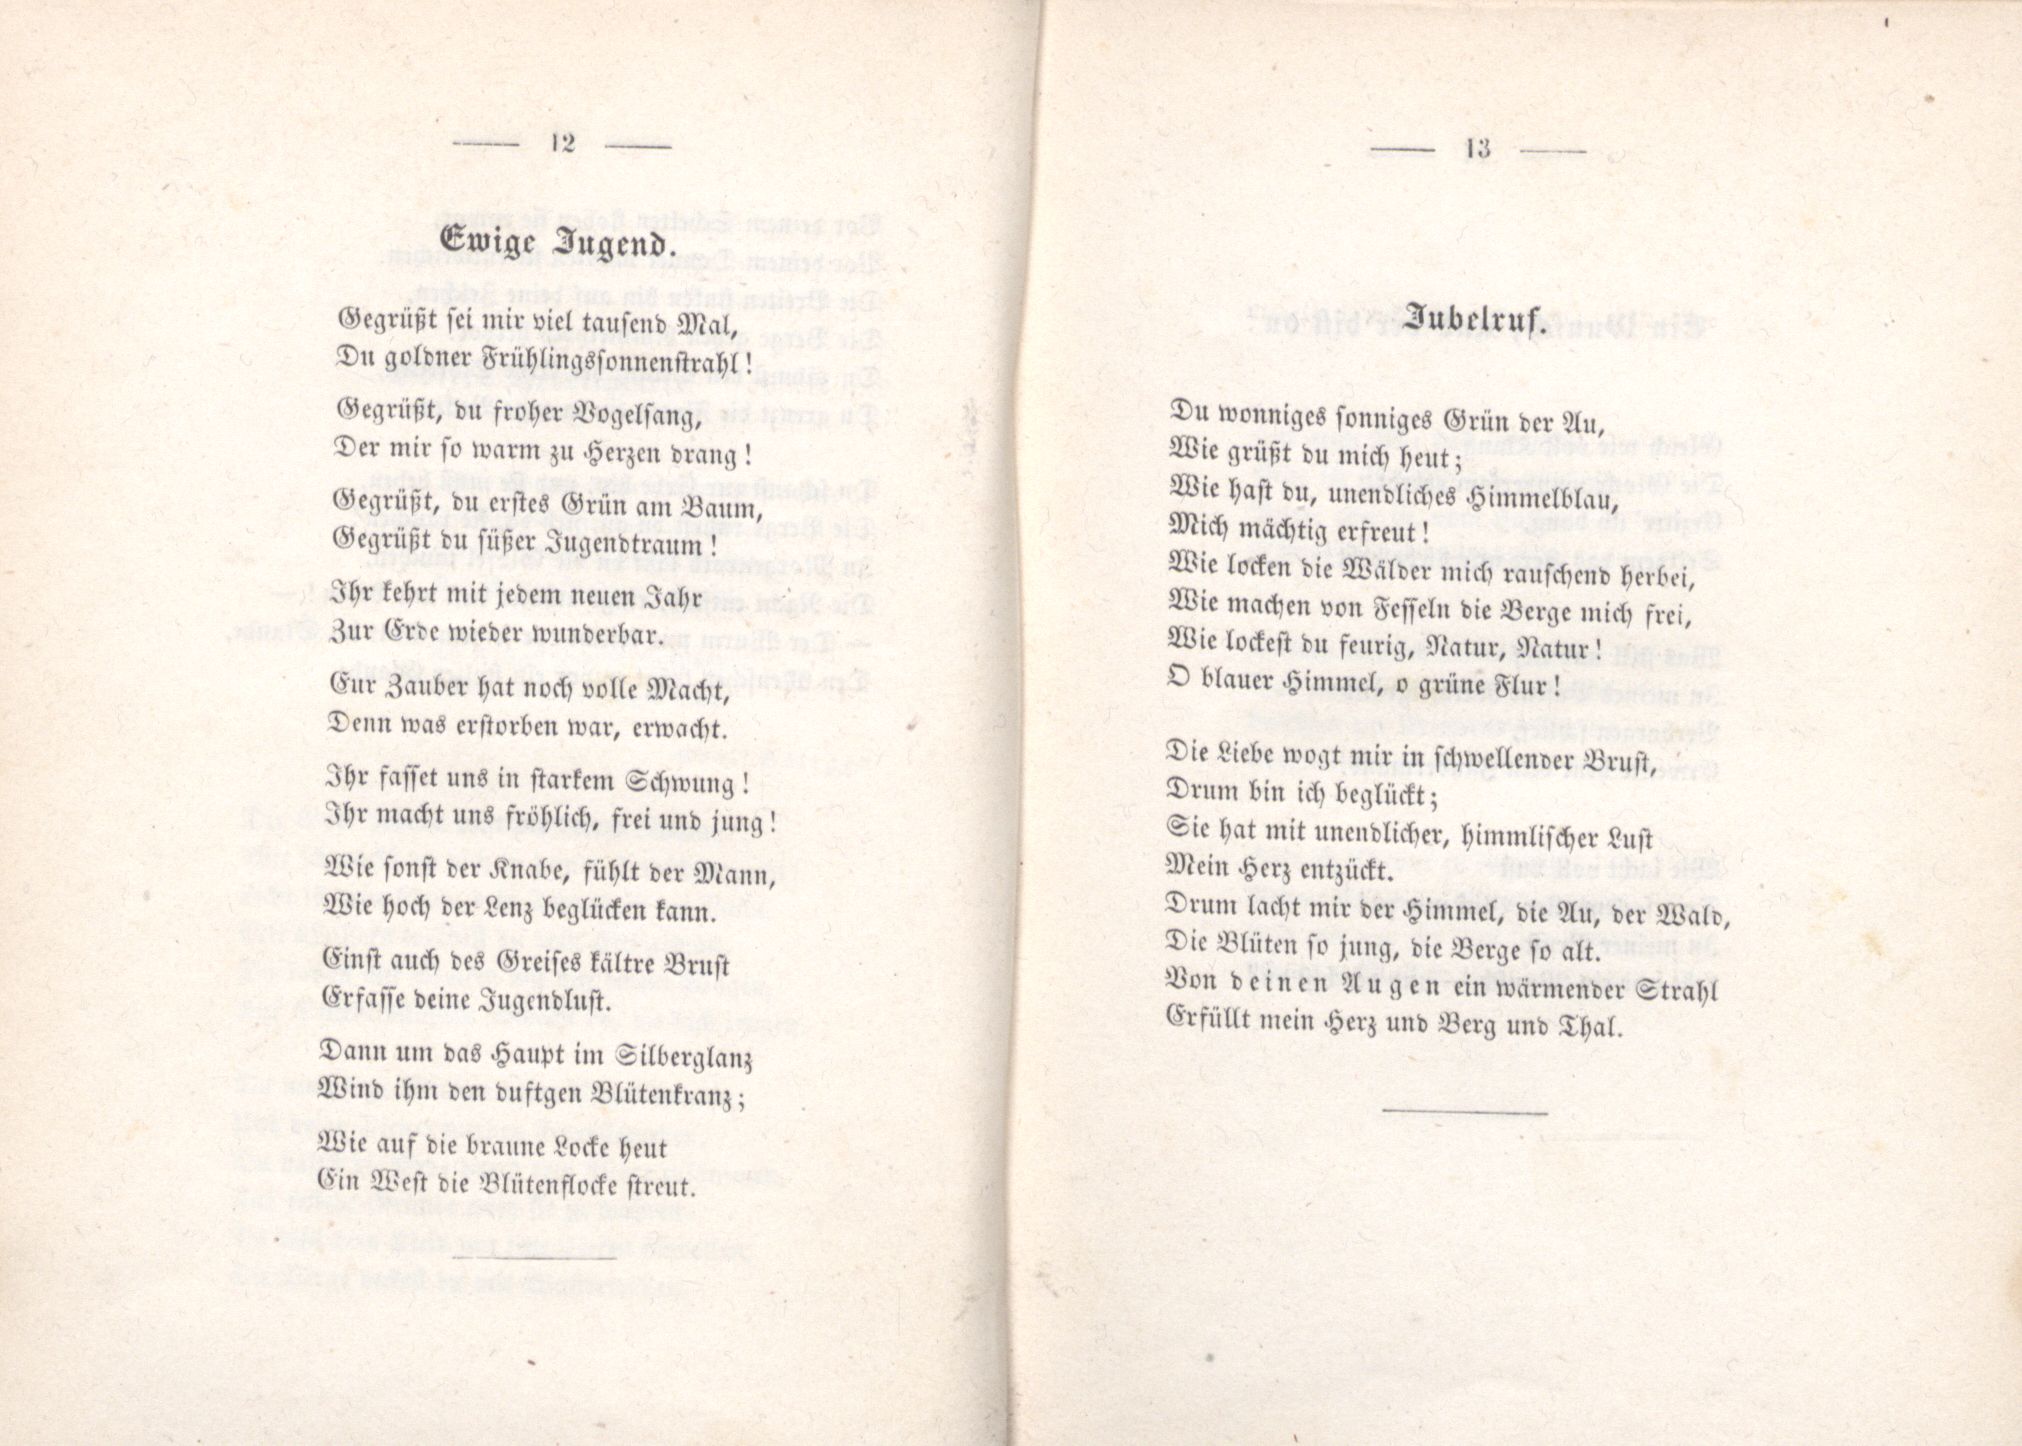 Jubelruf (1853) | 1. (12-13) Основной текст